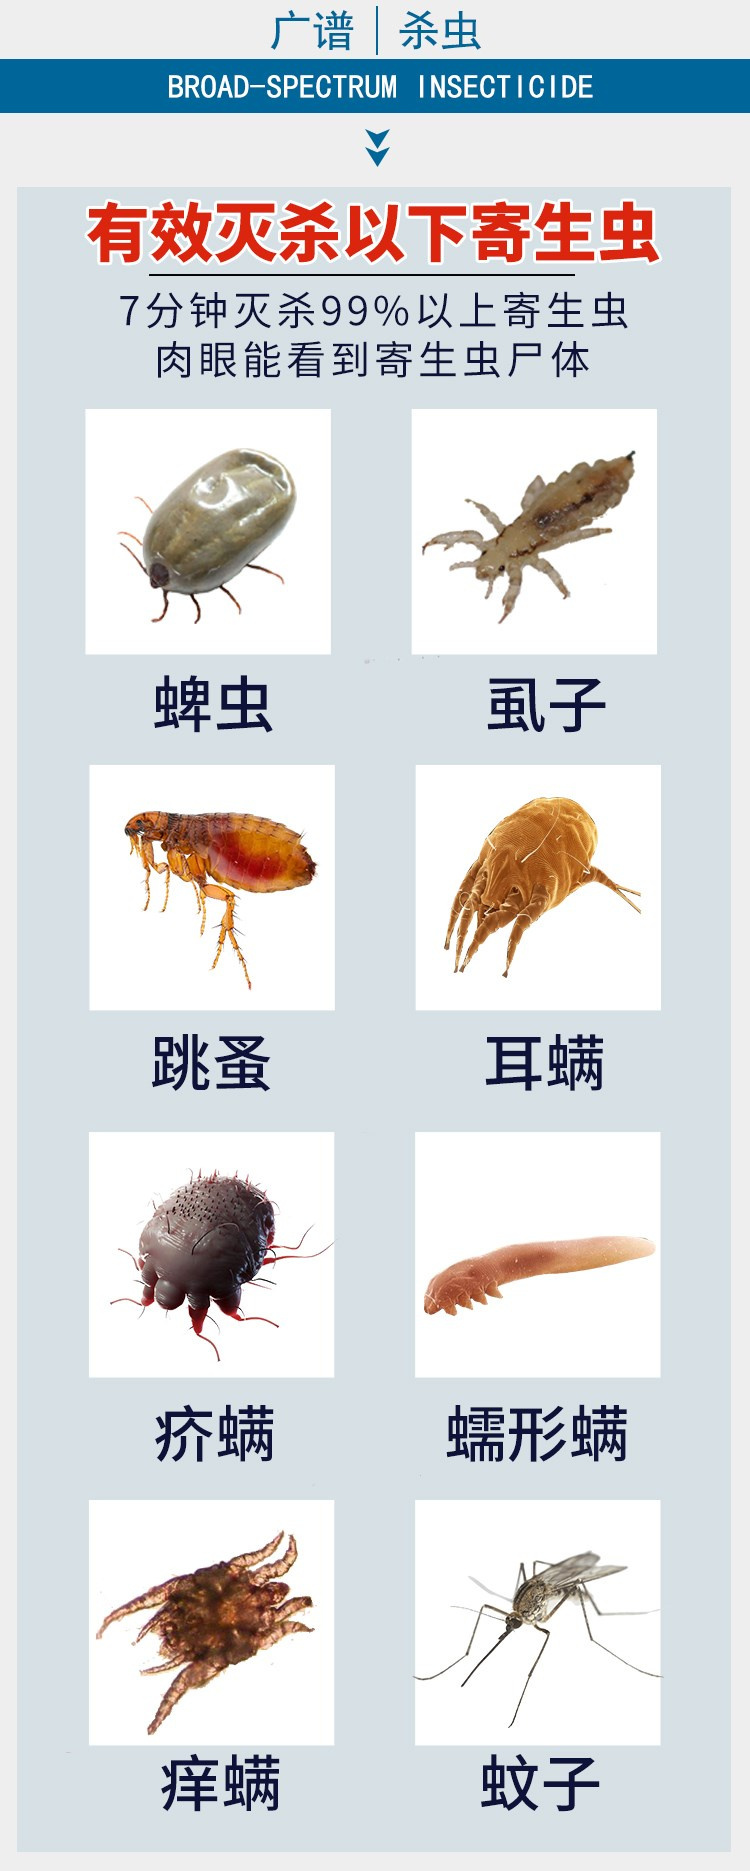 Ngoài 灵, ngoài Lai Ling còn bọ cạp ngoài bọ ve, bọ chét, mèo và chó, thú cưng tắm thuốc, giun ngoài, chó - Cat / Dog Medical Supplies Dụng cụ thú y giá sỉ